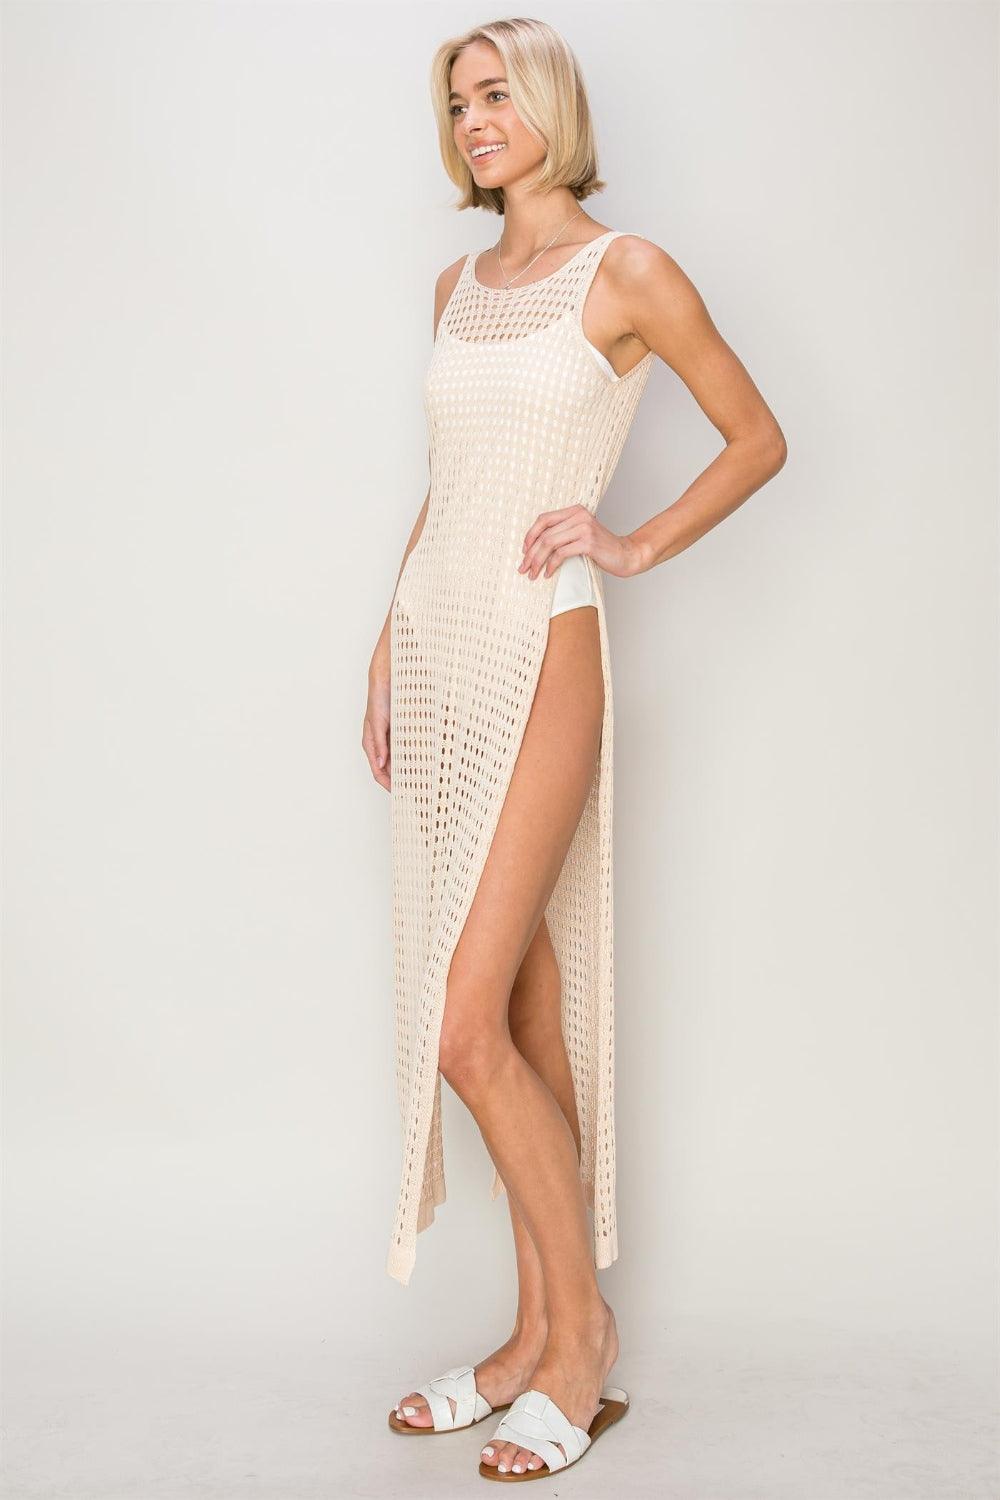 HYFVE Crochet Backless Cover Up Dress - Jessiz Boutique